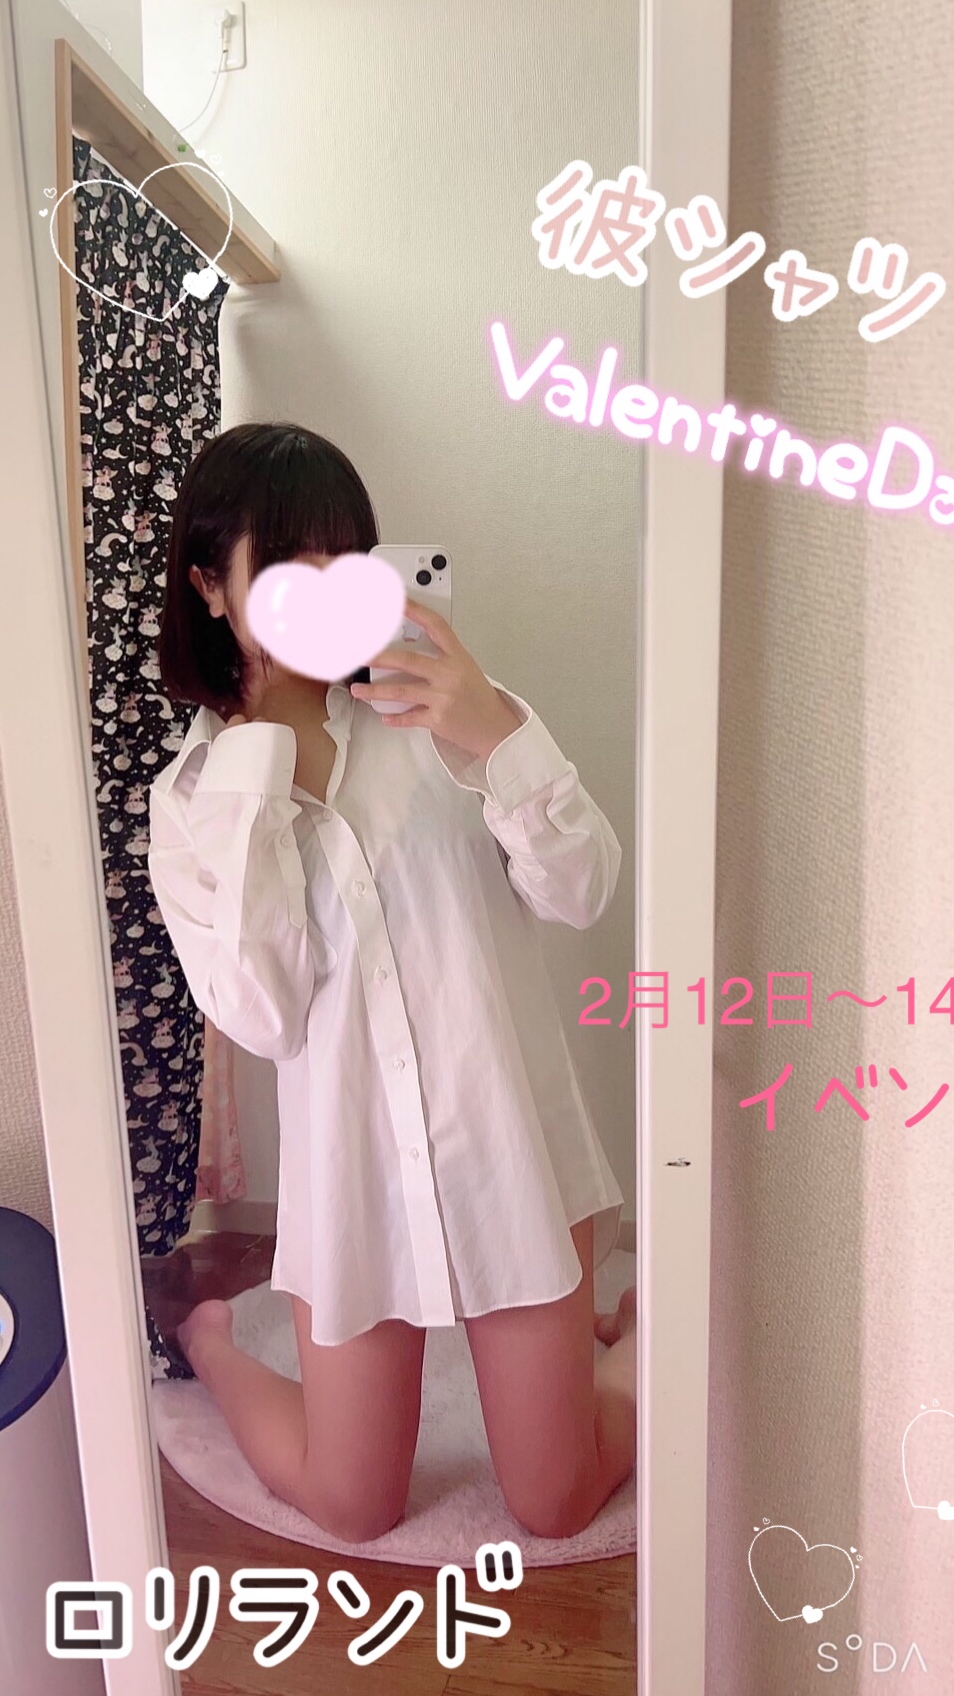 彼シャツのバレンタイン♡17:00〜イベント！の画像1